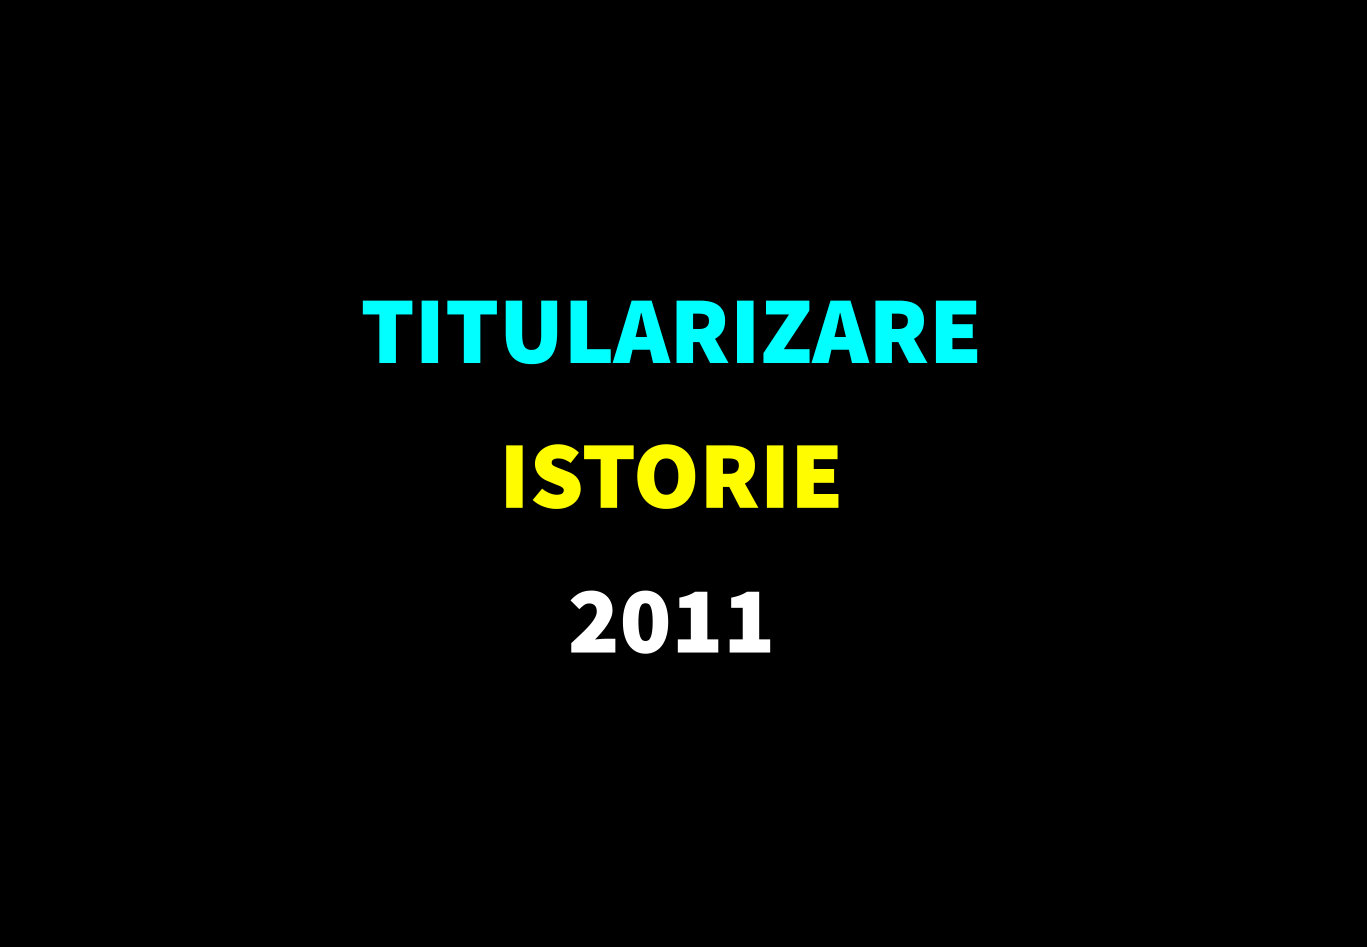 Titularizare istorie 2011